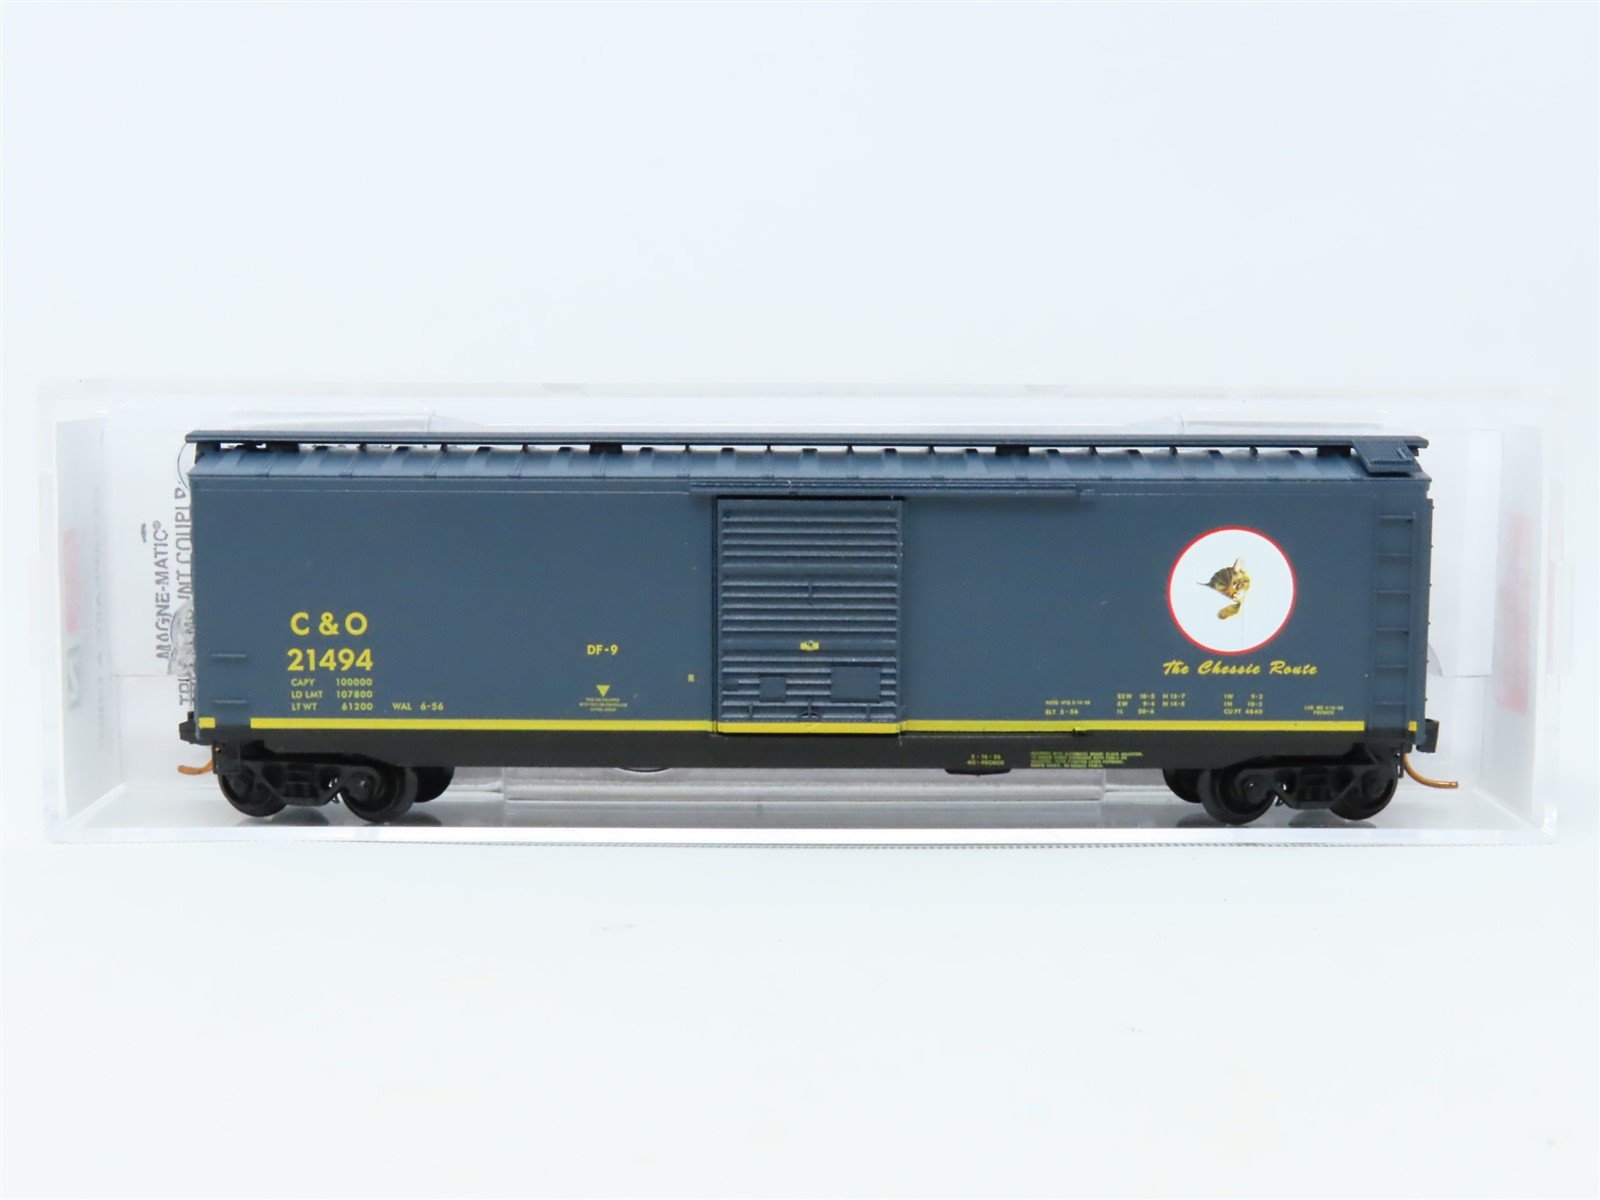 N Scale Micro-Trains MTL 03100076 C&O "The Chessie Route" 50' Box Car #21494